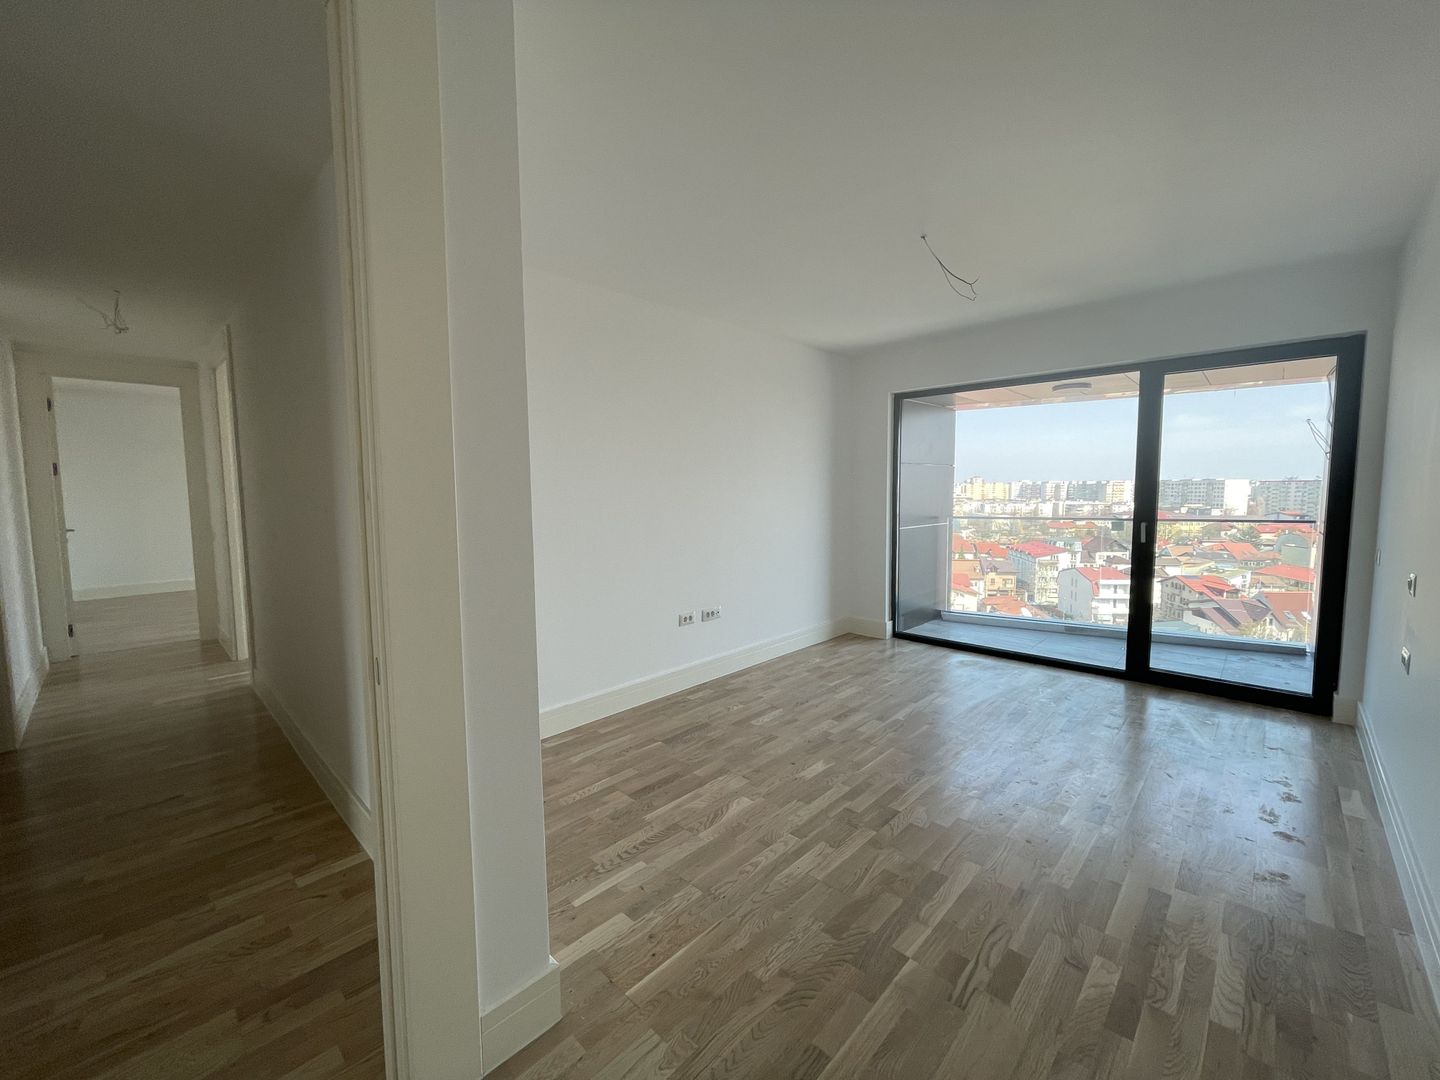 4-Room Apartment Panoramic View Upstairs